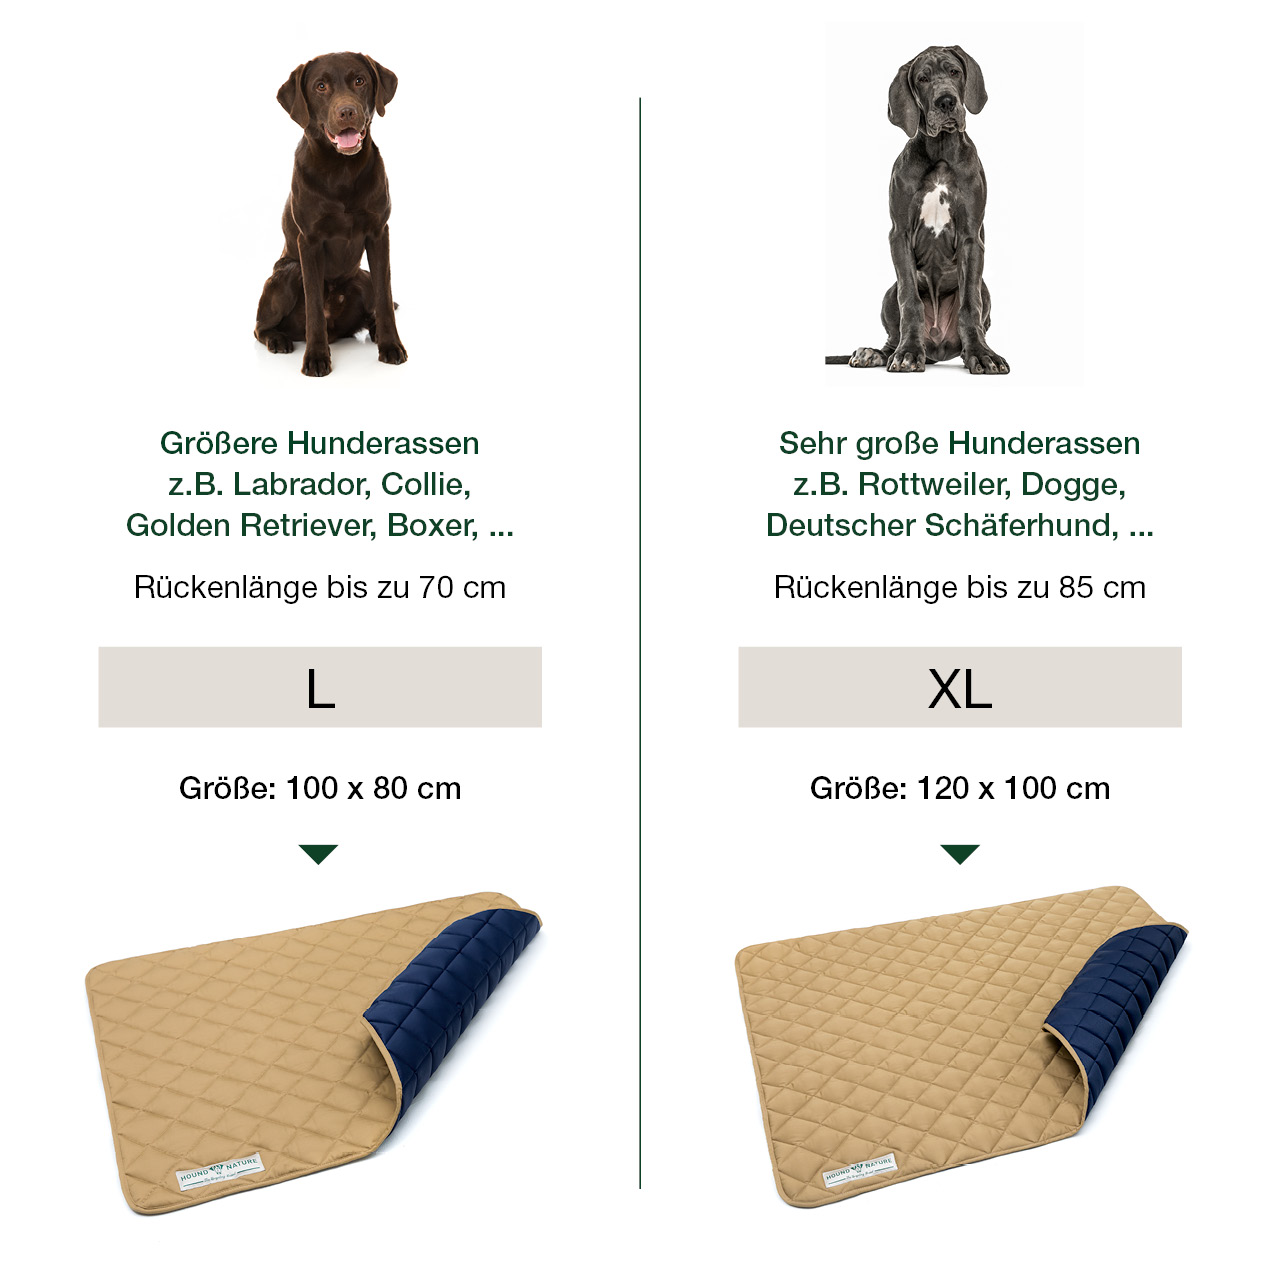 Größentabelle für gepolsterte Öko-Liegedecke Davos beige-blau + Beispiel-Hunderassen für Hundematte